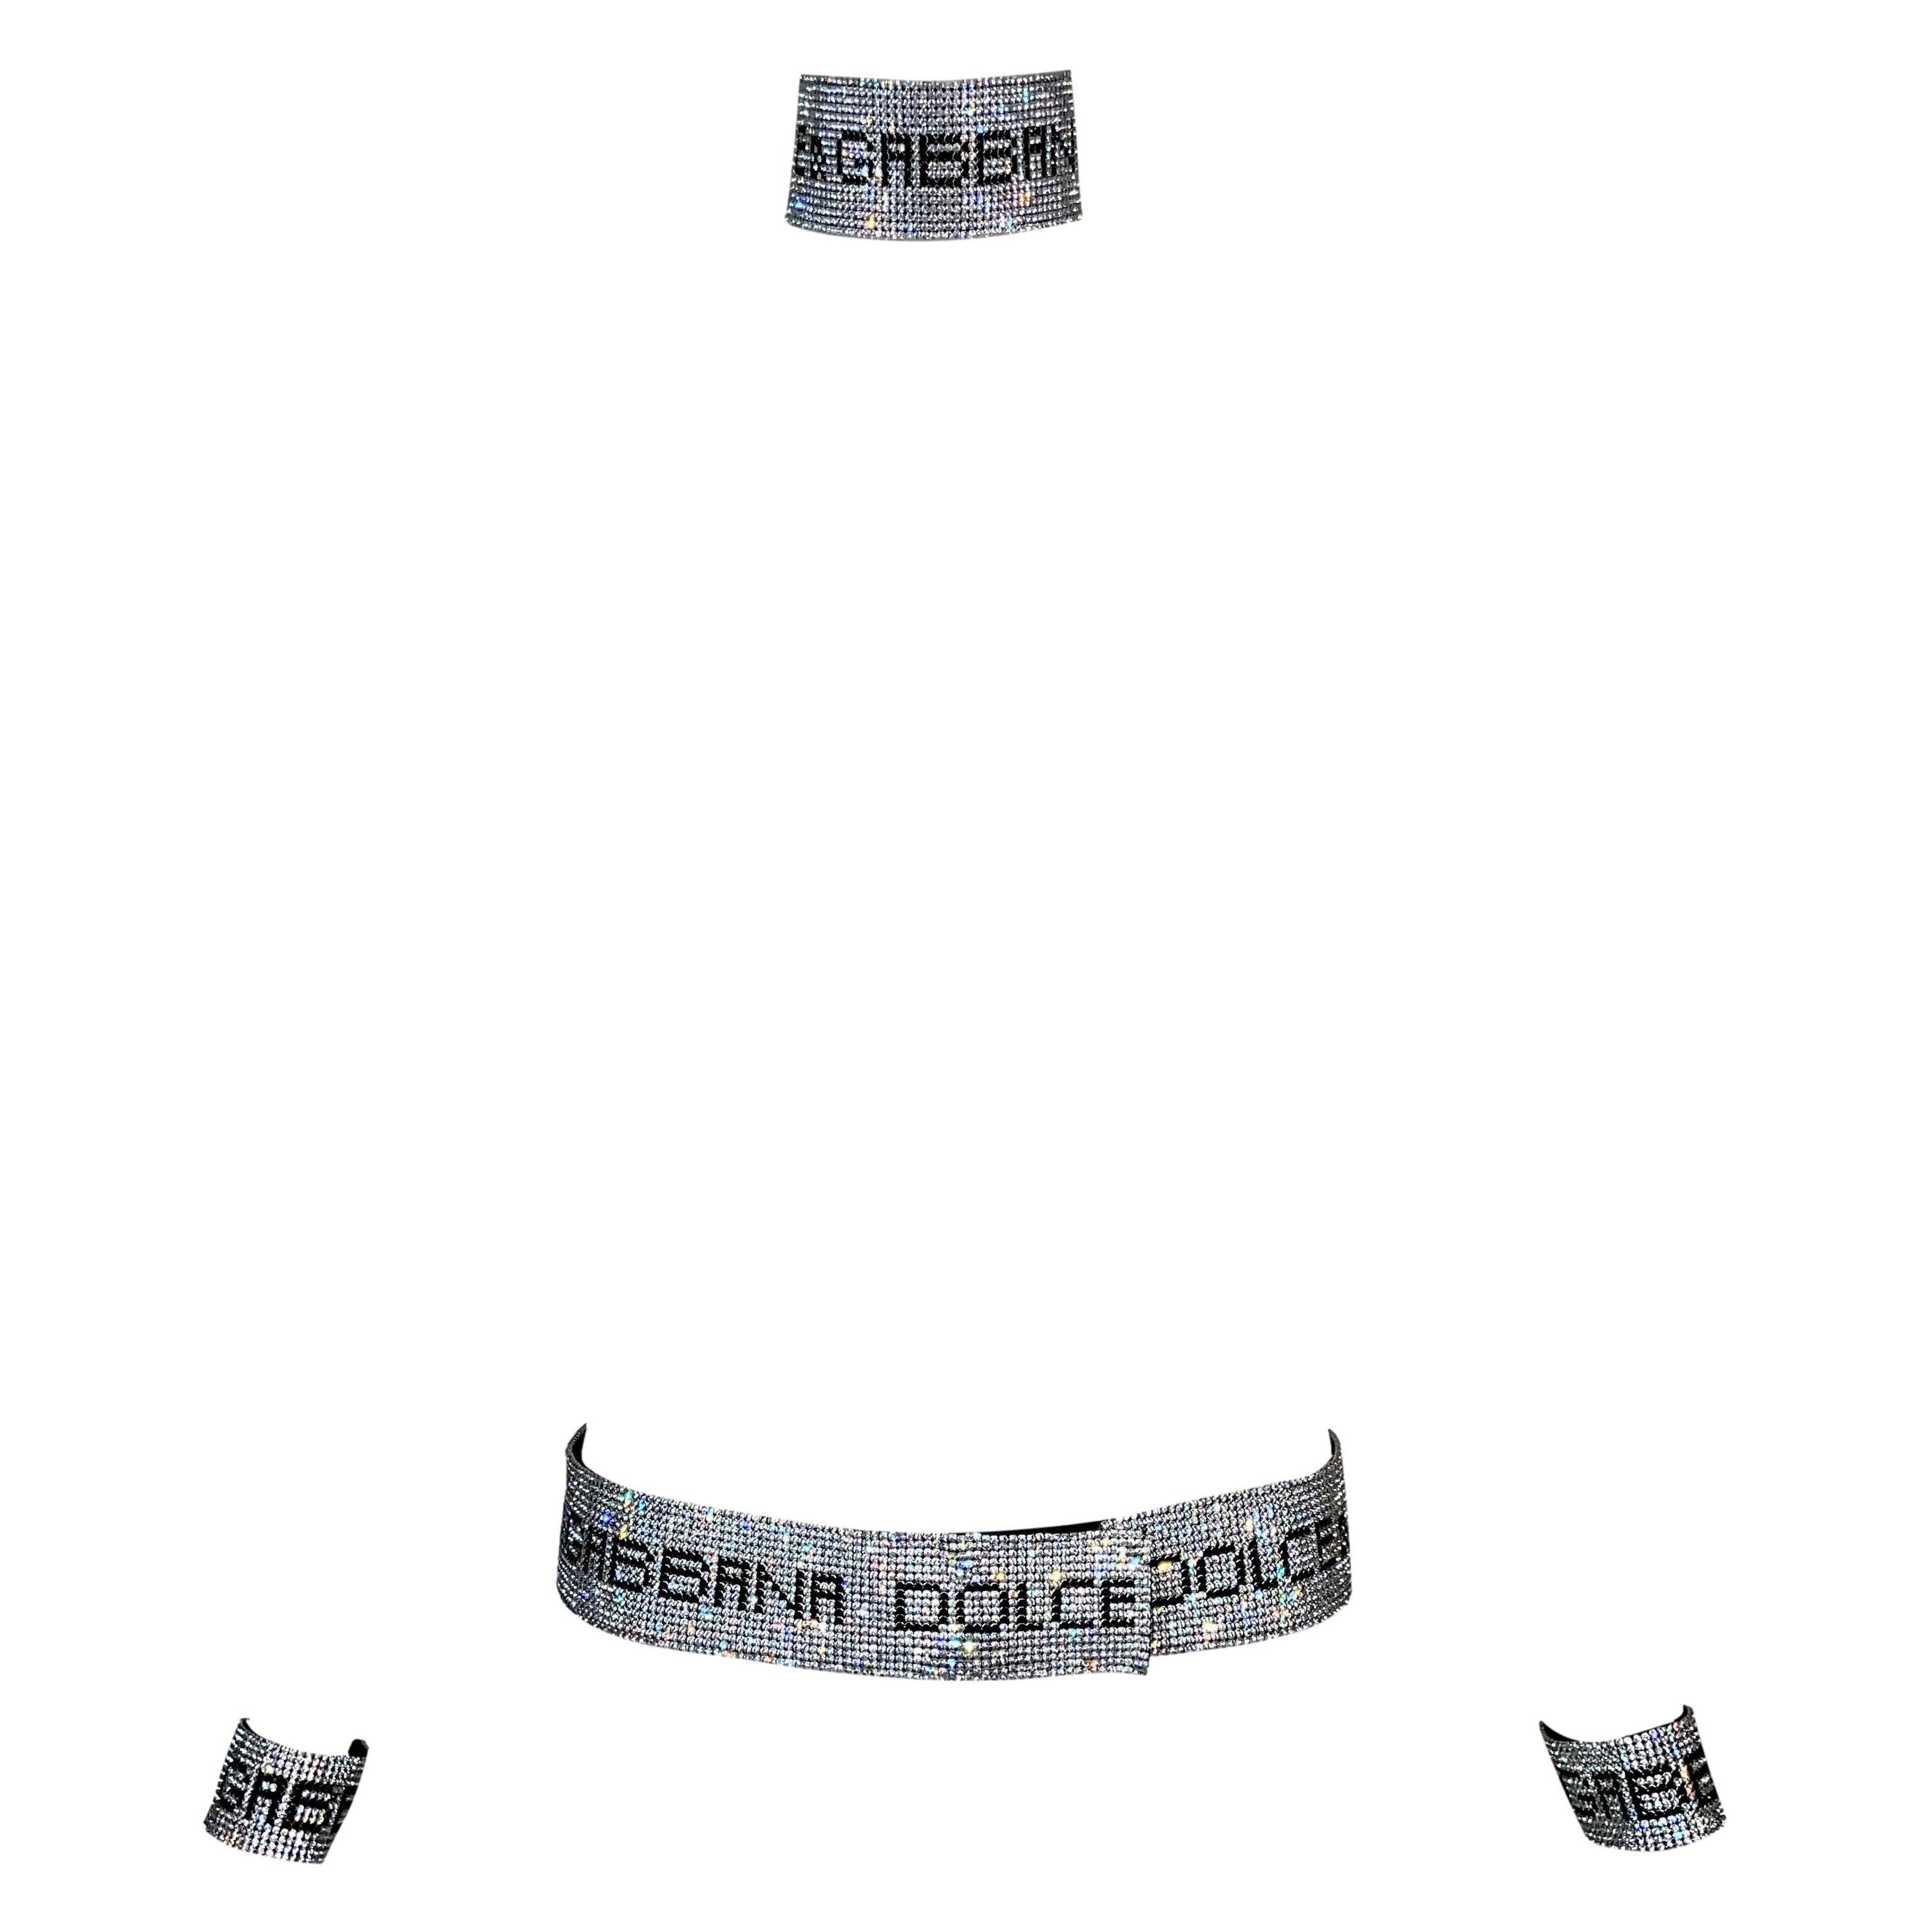 S/S 2000 Dolce & Gabbana Crystal Logo Belt Choker Bracelets Set